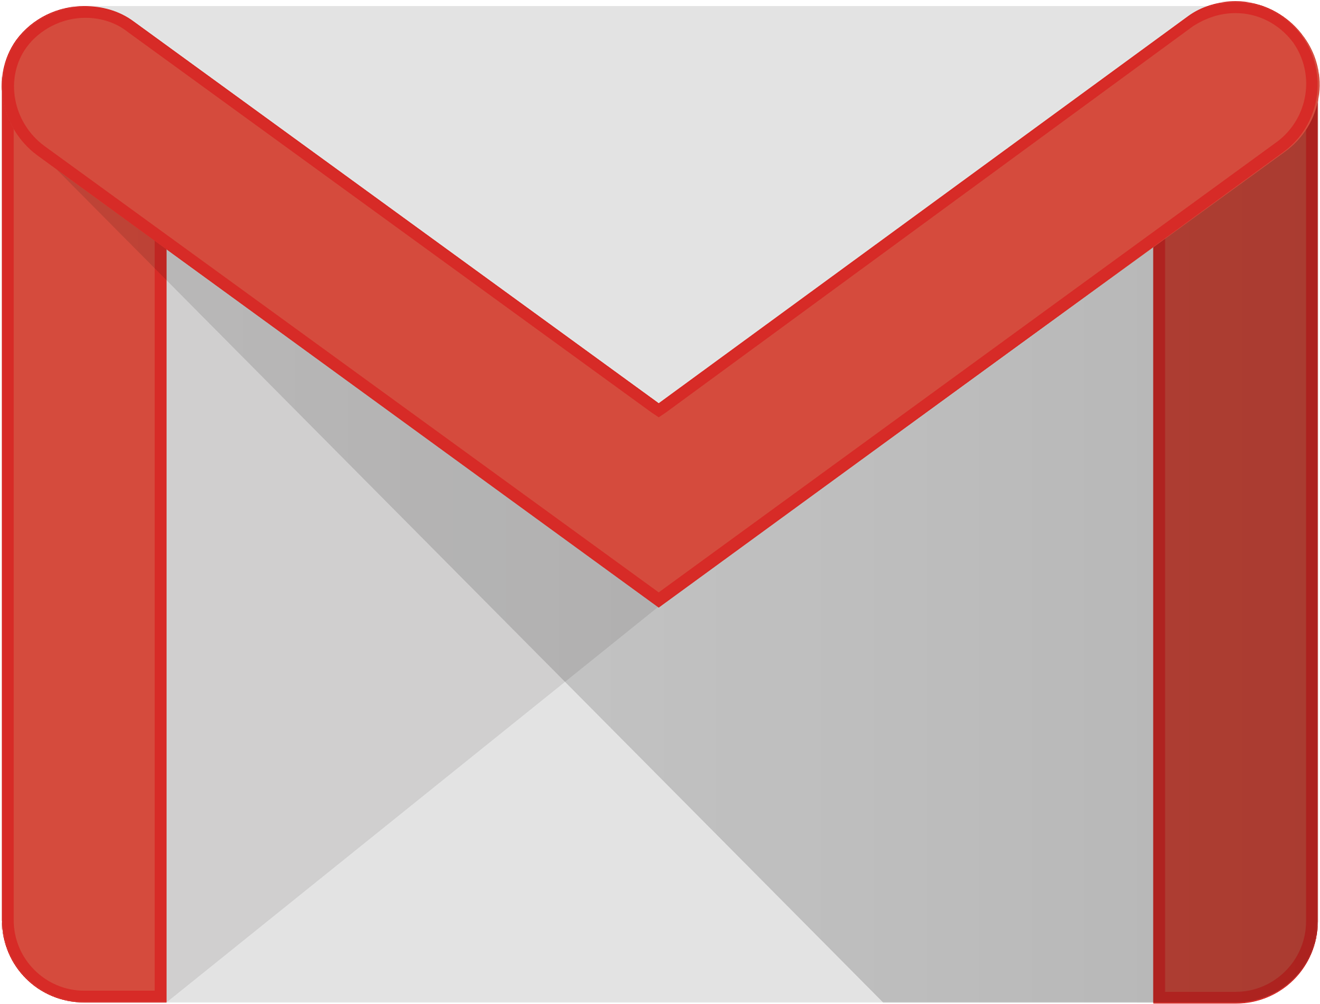 Gmail Logo Hd Picture Alternative Clipart Design U2022 - Gmail Png Logo Hd (1920x1080)